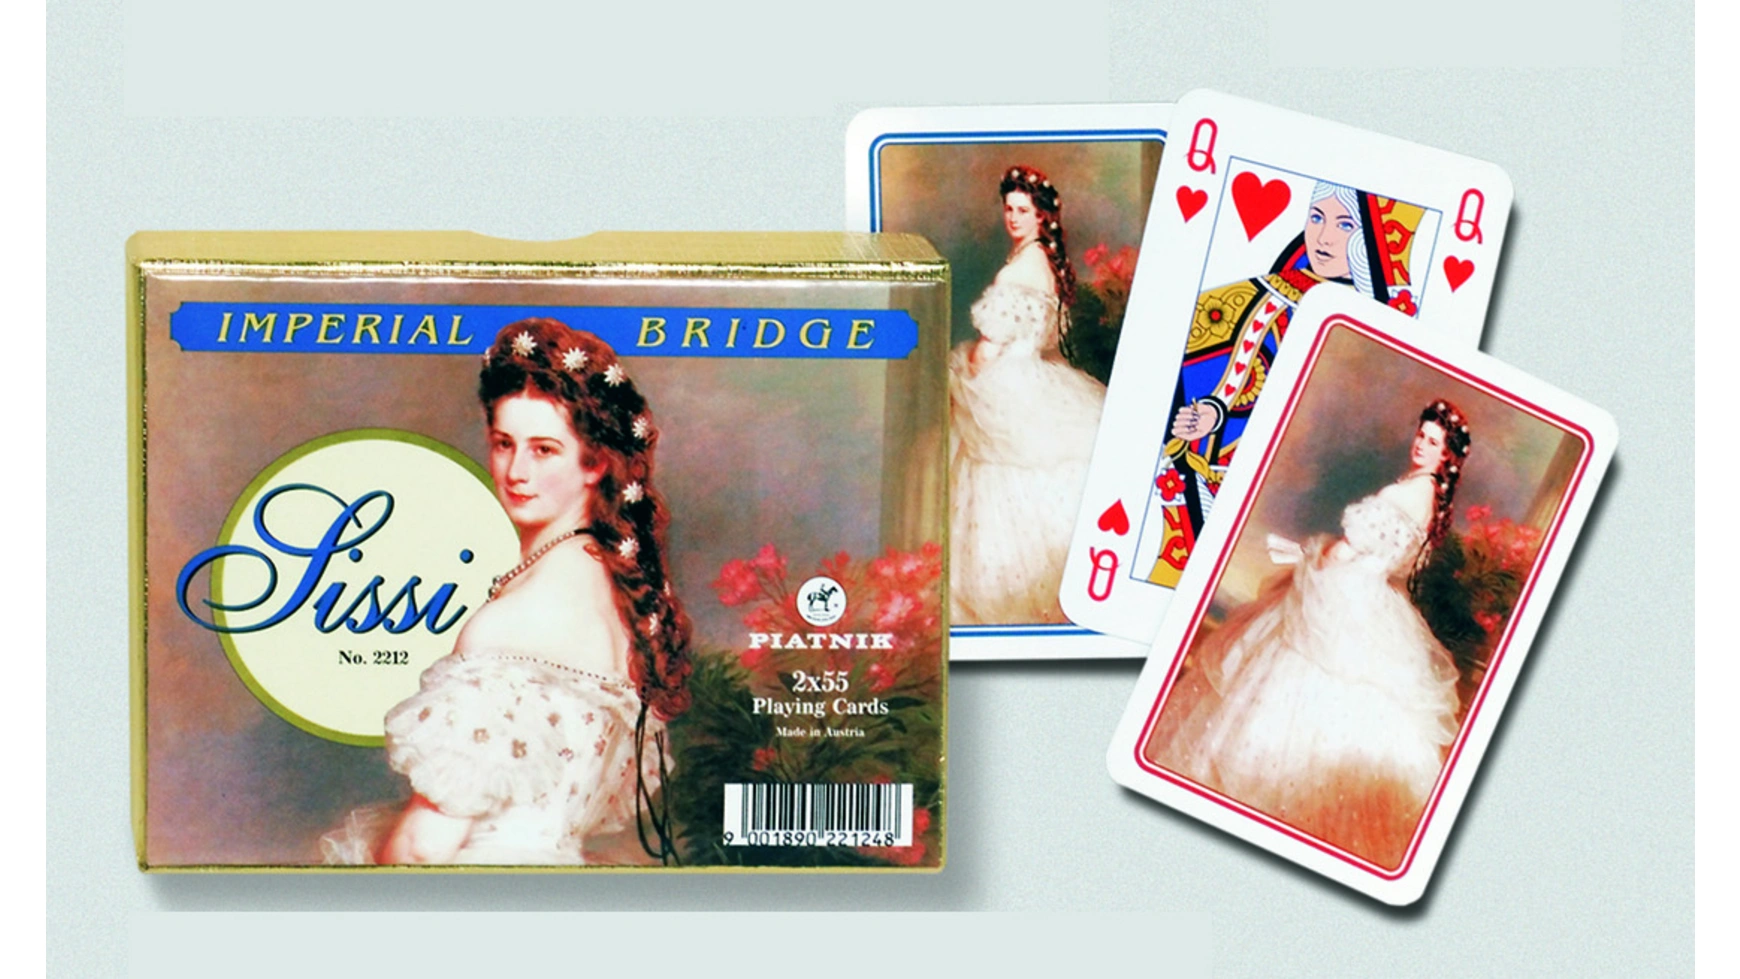 Игральные карты sissi imperial bridge с обложкой императрицы сисси